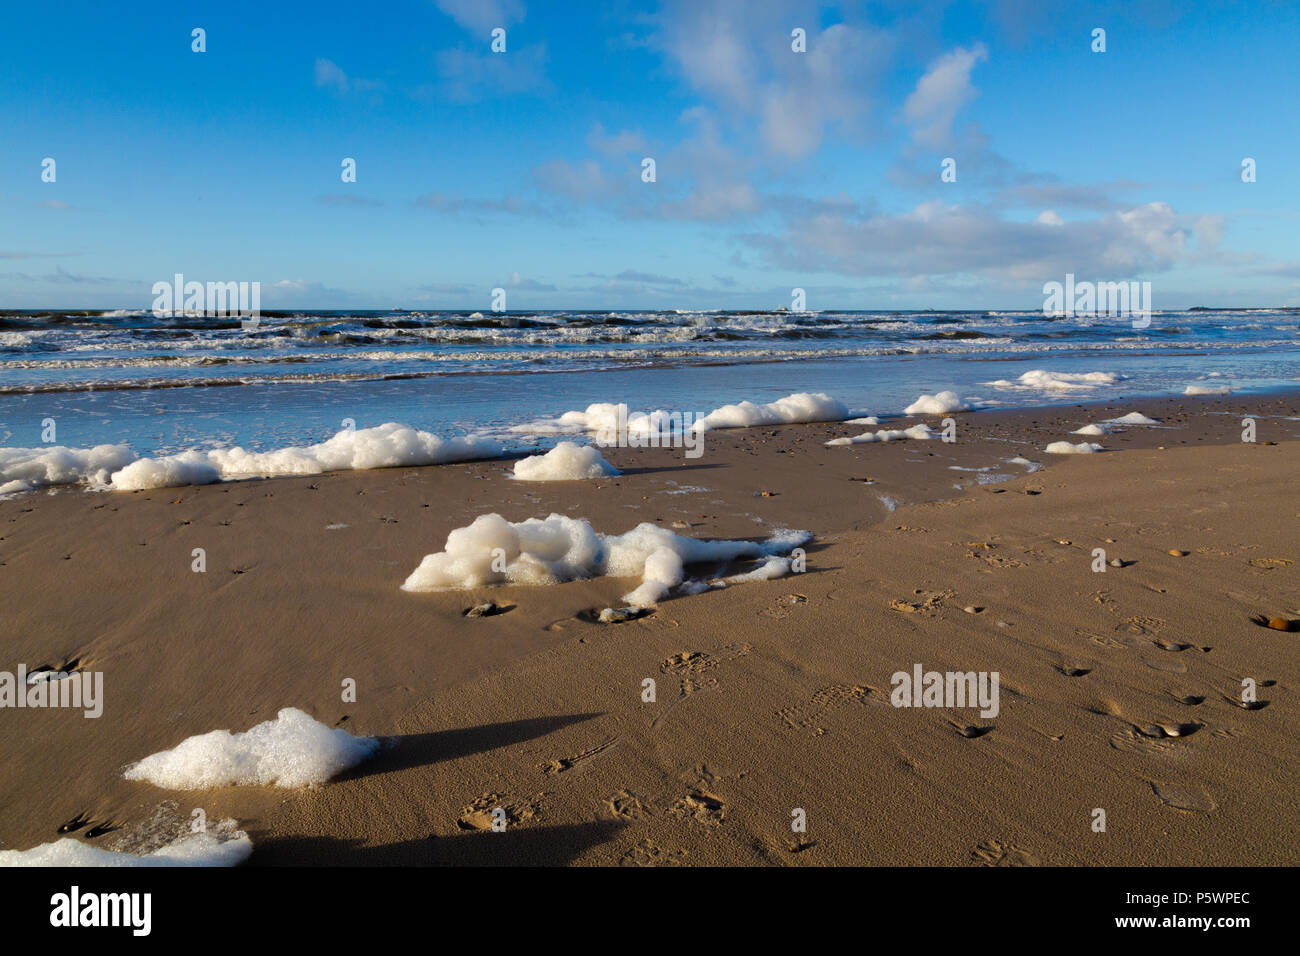 After storm in the North Sea. Sea foam on the beach in Hvide Sande, Denmark, after storm storm. Efter storm i Nordsøen. Havskum på stranden i Hvide Sa Stock Photo